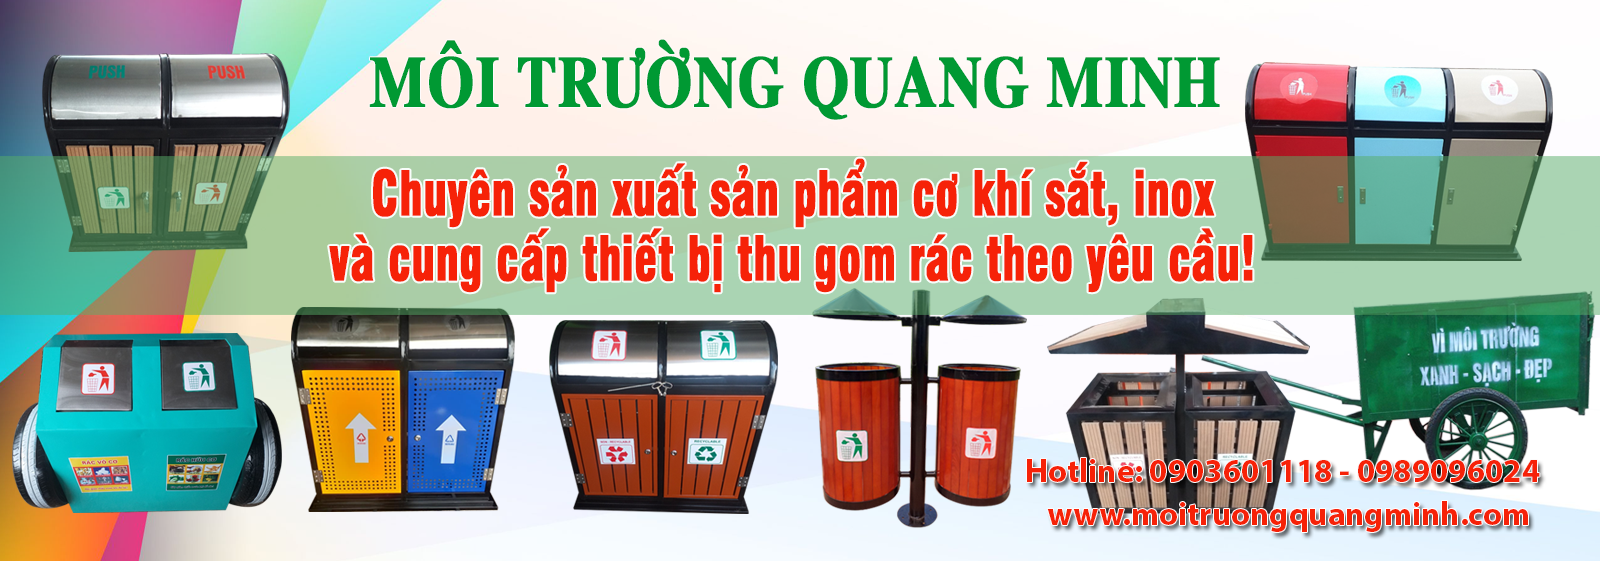 Môi trường Quang Minh chuyên cung cấp thùng rác các loại